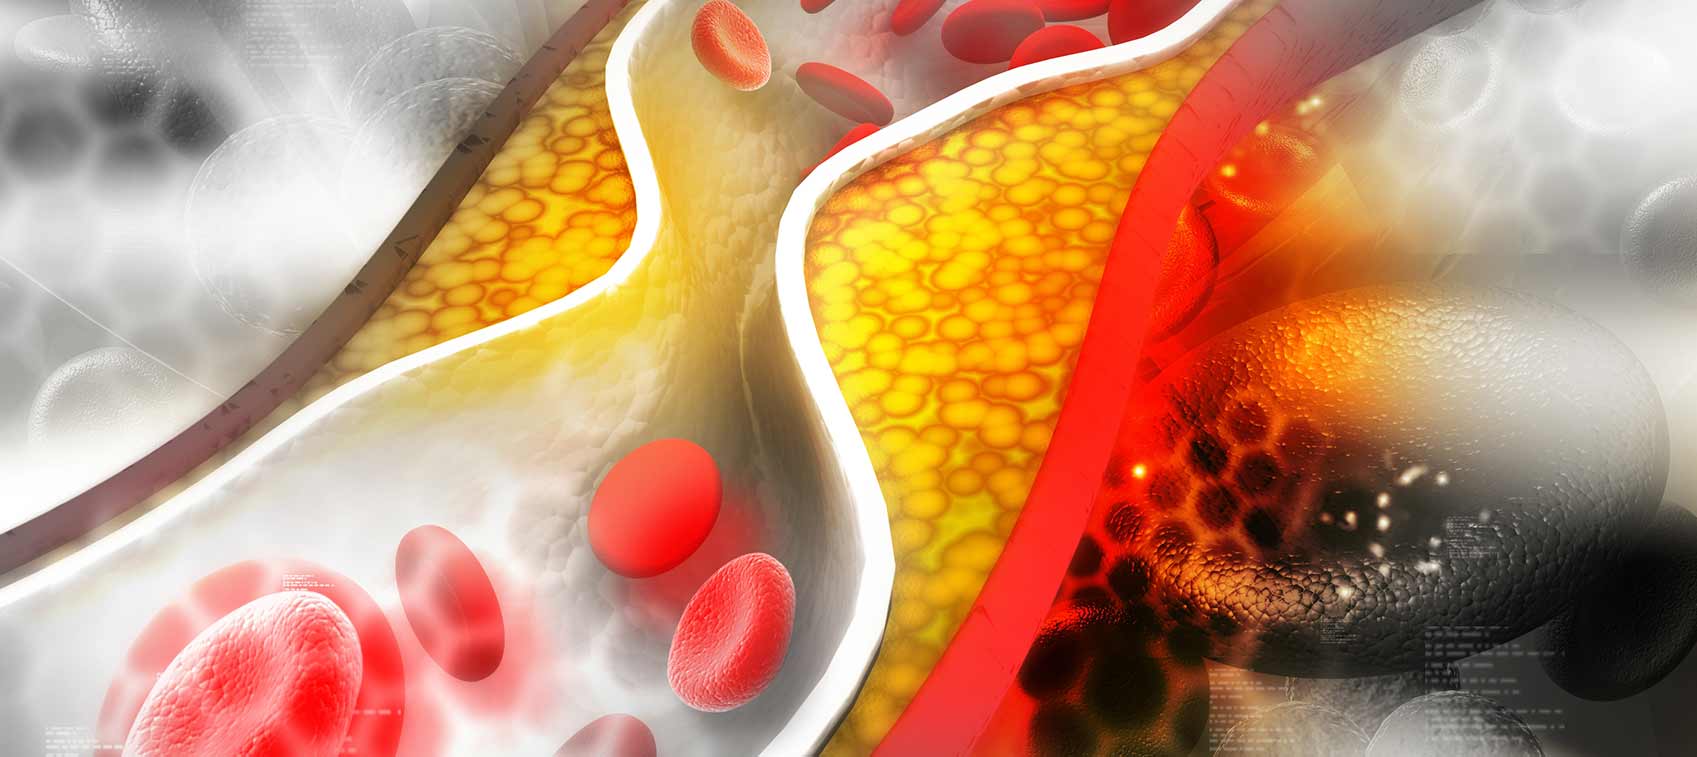 Co to jest cholesterol i niebezpieczny, czy to dla zdrowia?